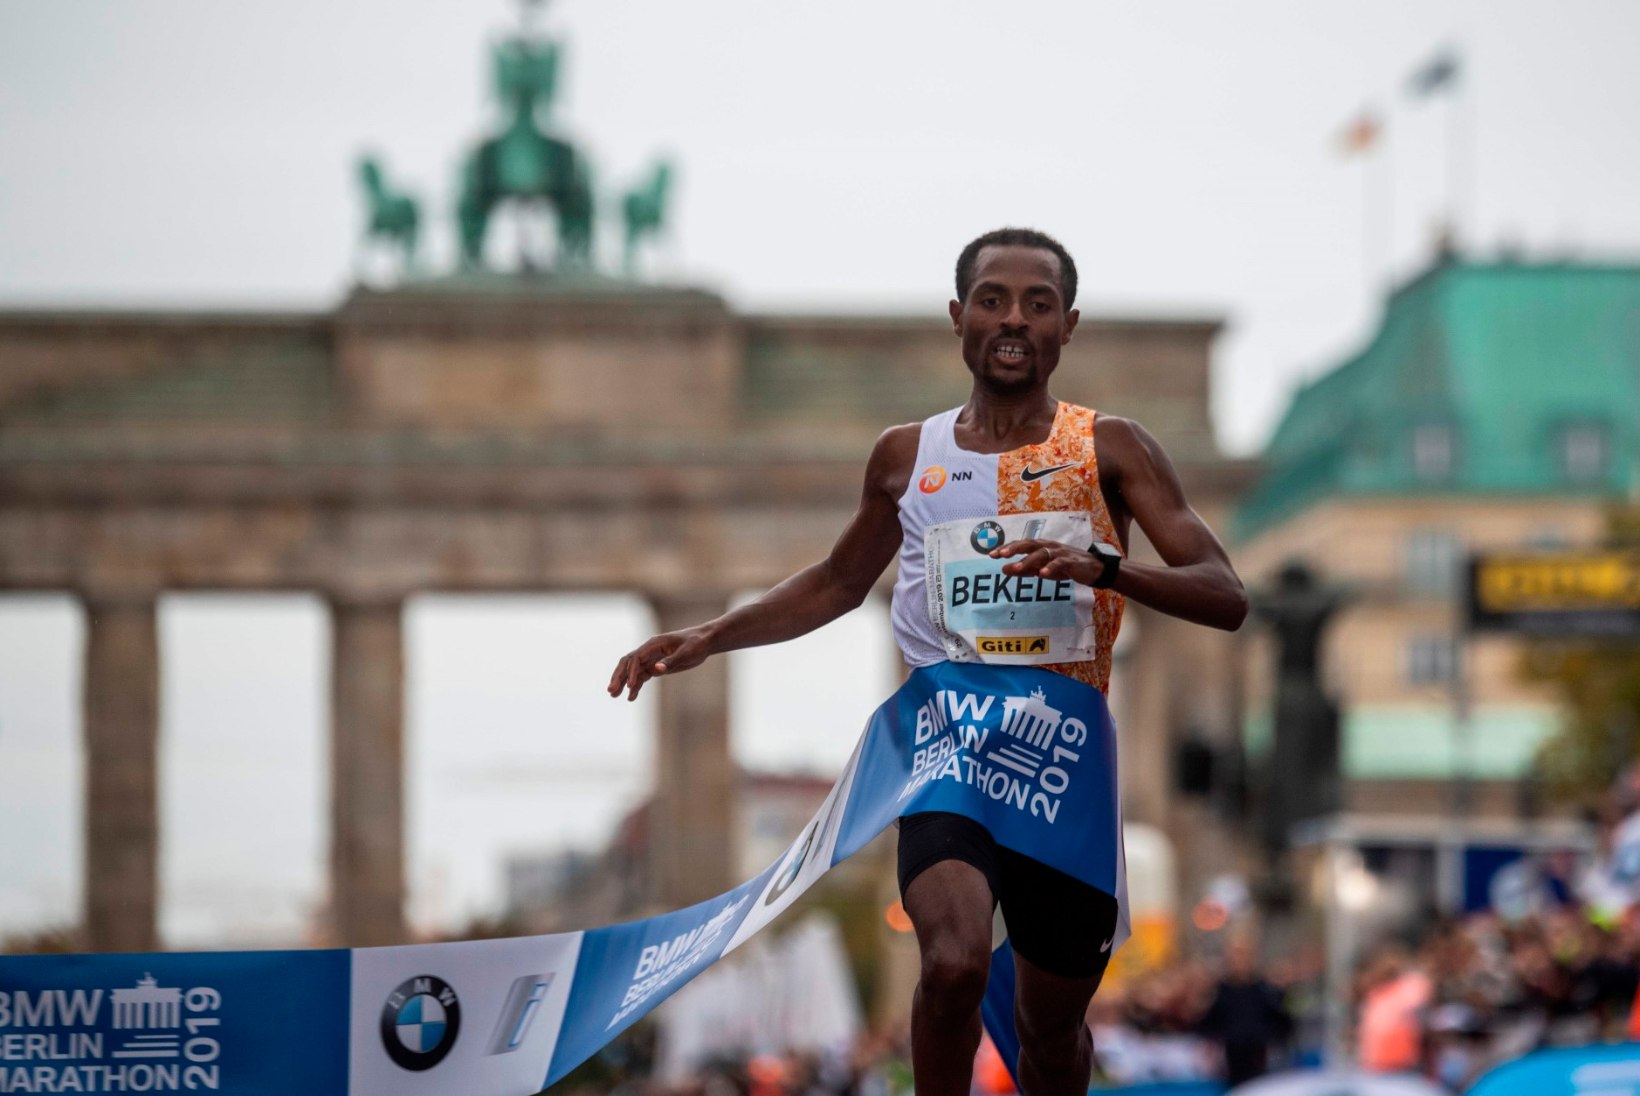 VAU! Etioopia jooksuäss lidus Berliini maratonil kõigi aegade teise aja